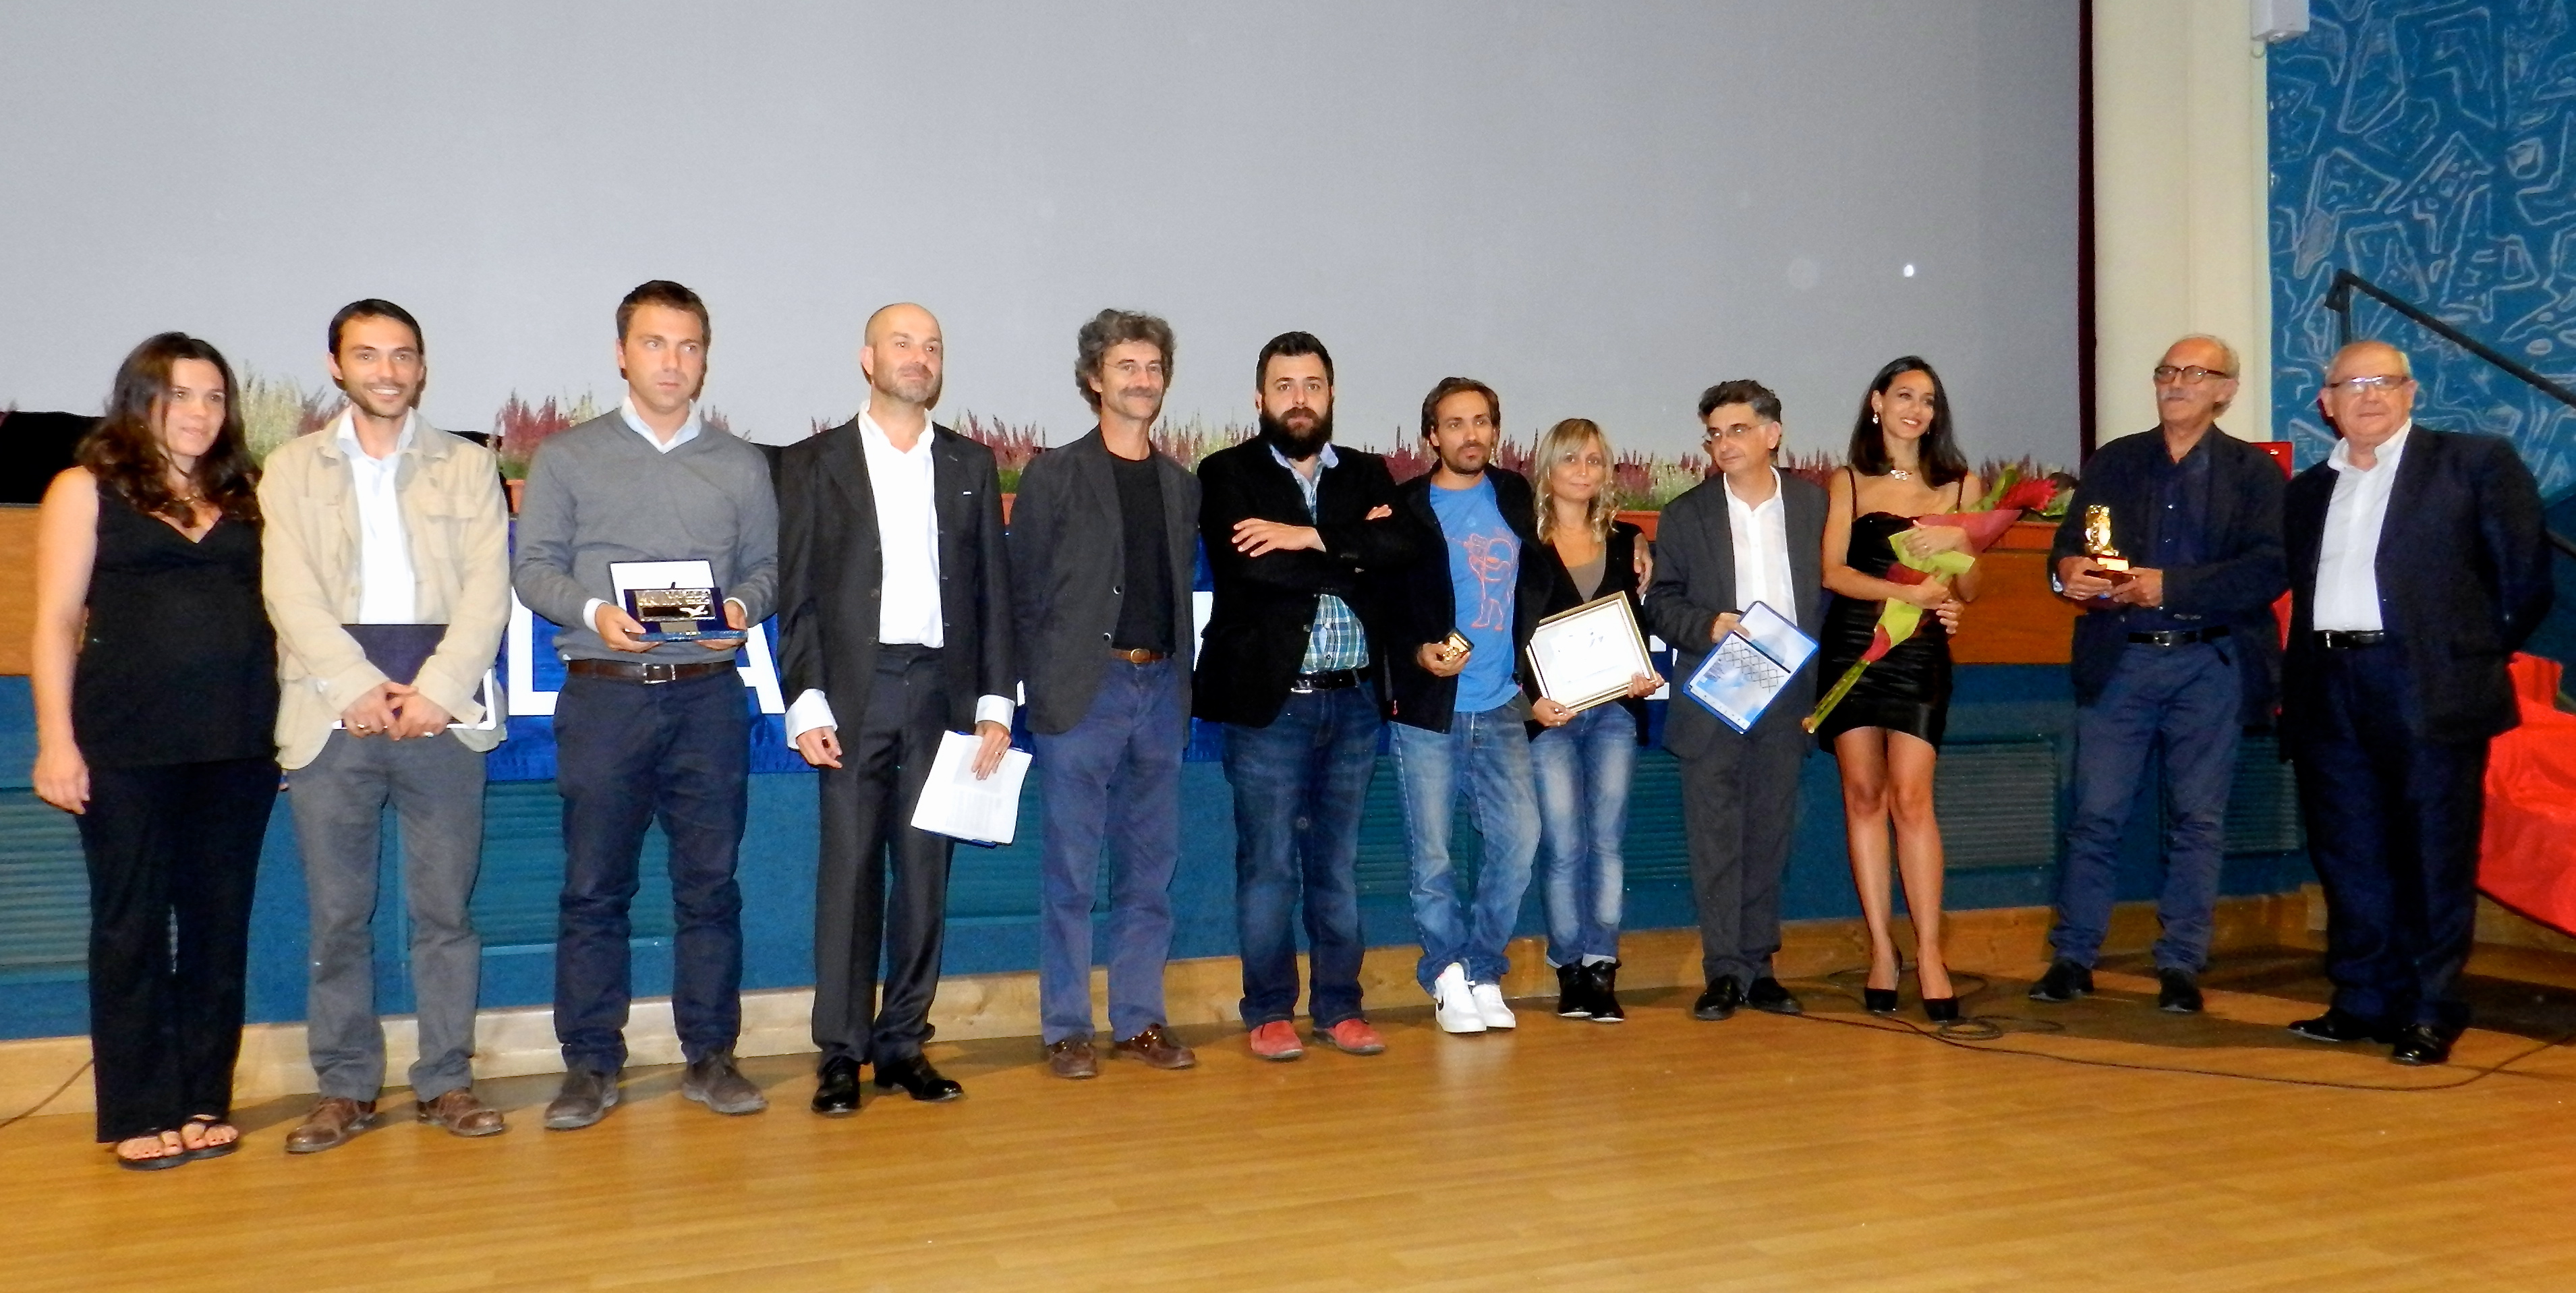 La cerimonia di premiazione del 31° Valdarno Cinema Fedic